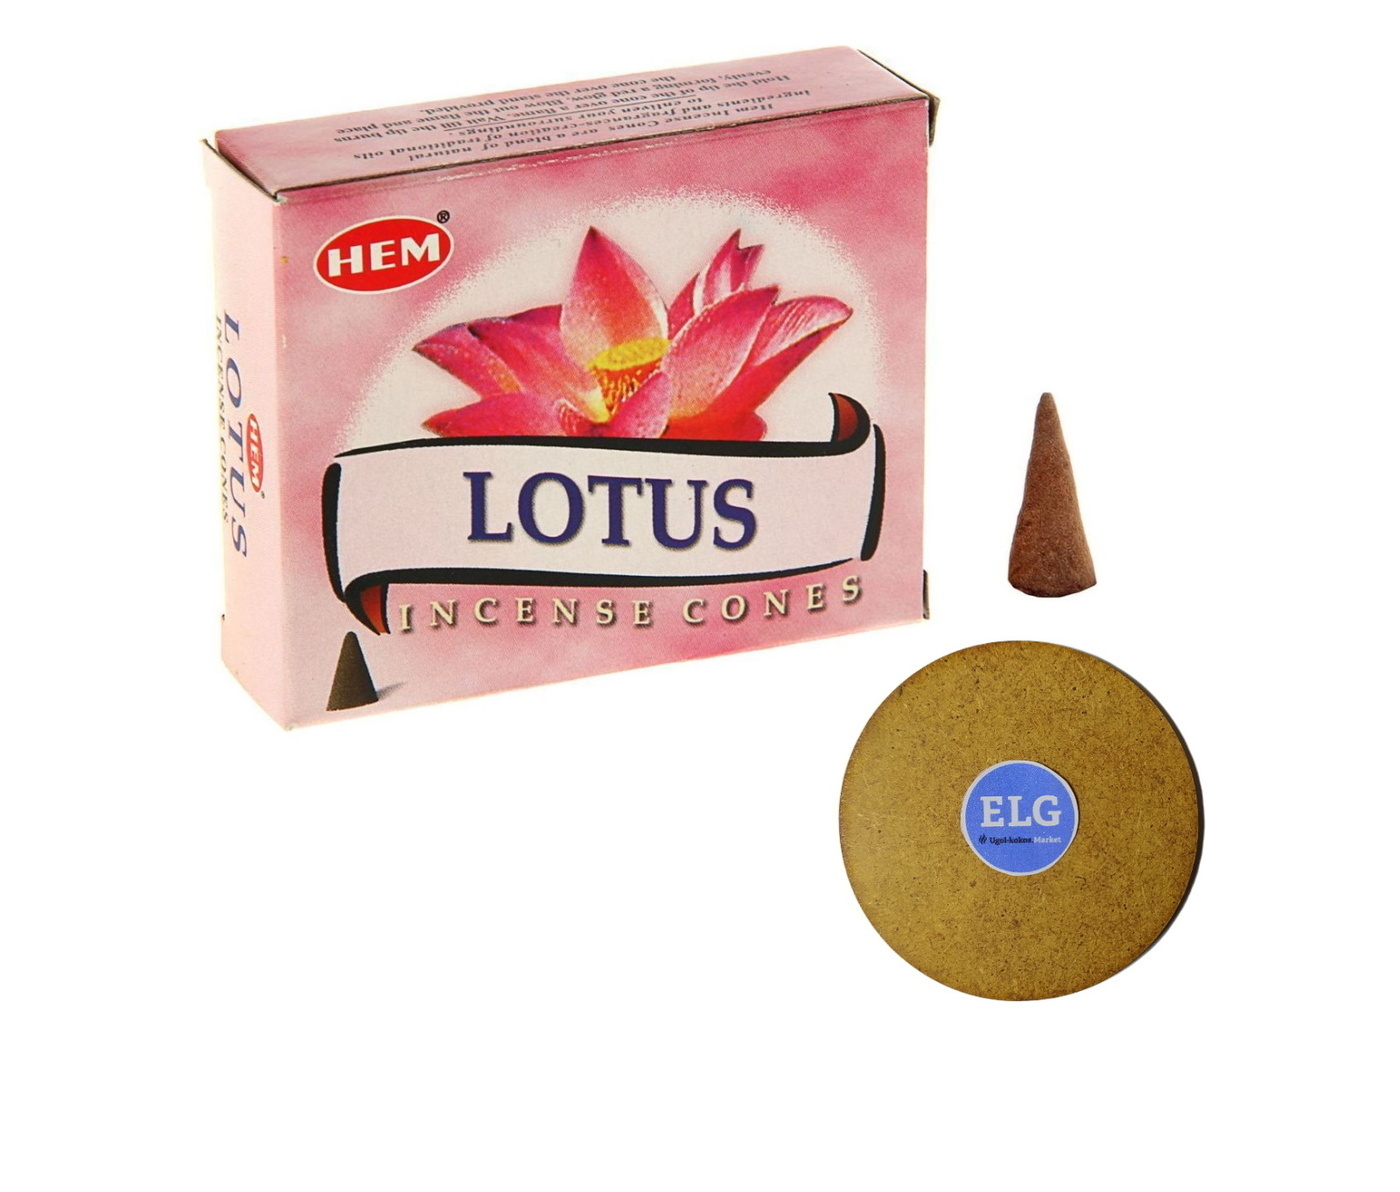 фото Благовония hem конусы лотос (lotus) упаковка 10 конусов + подставка elg